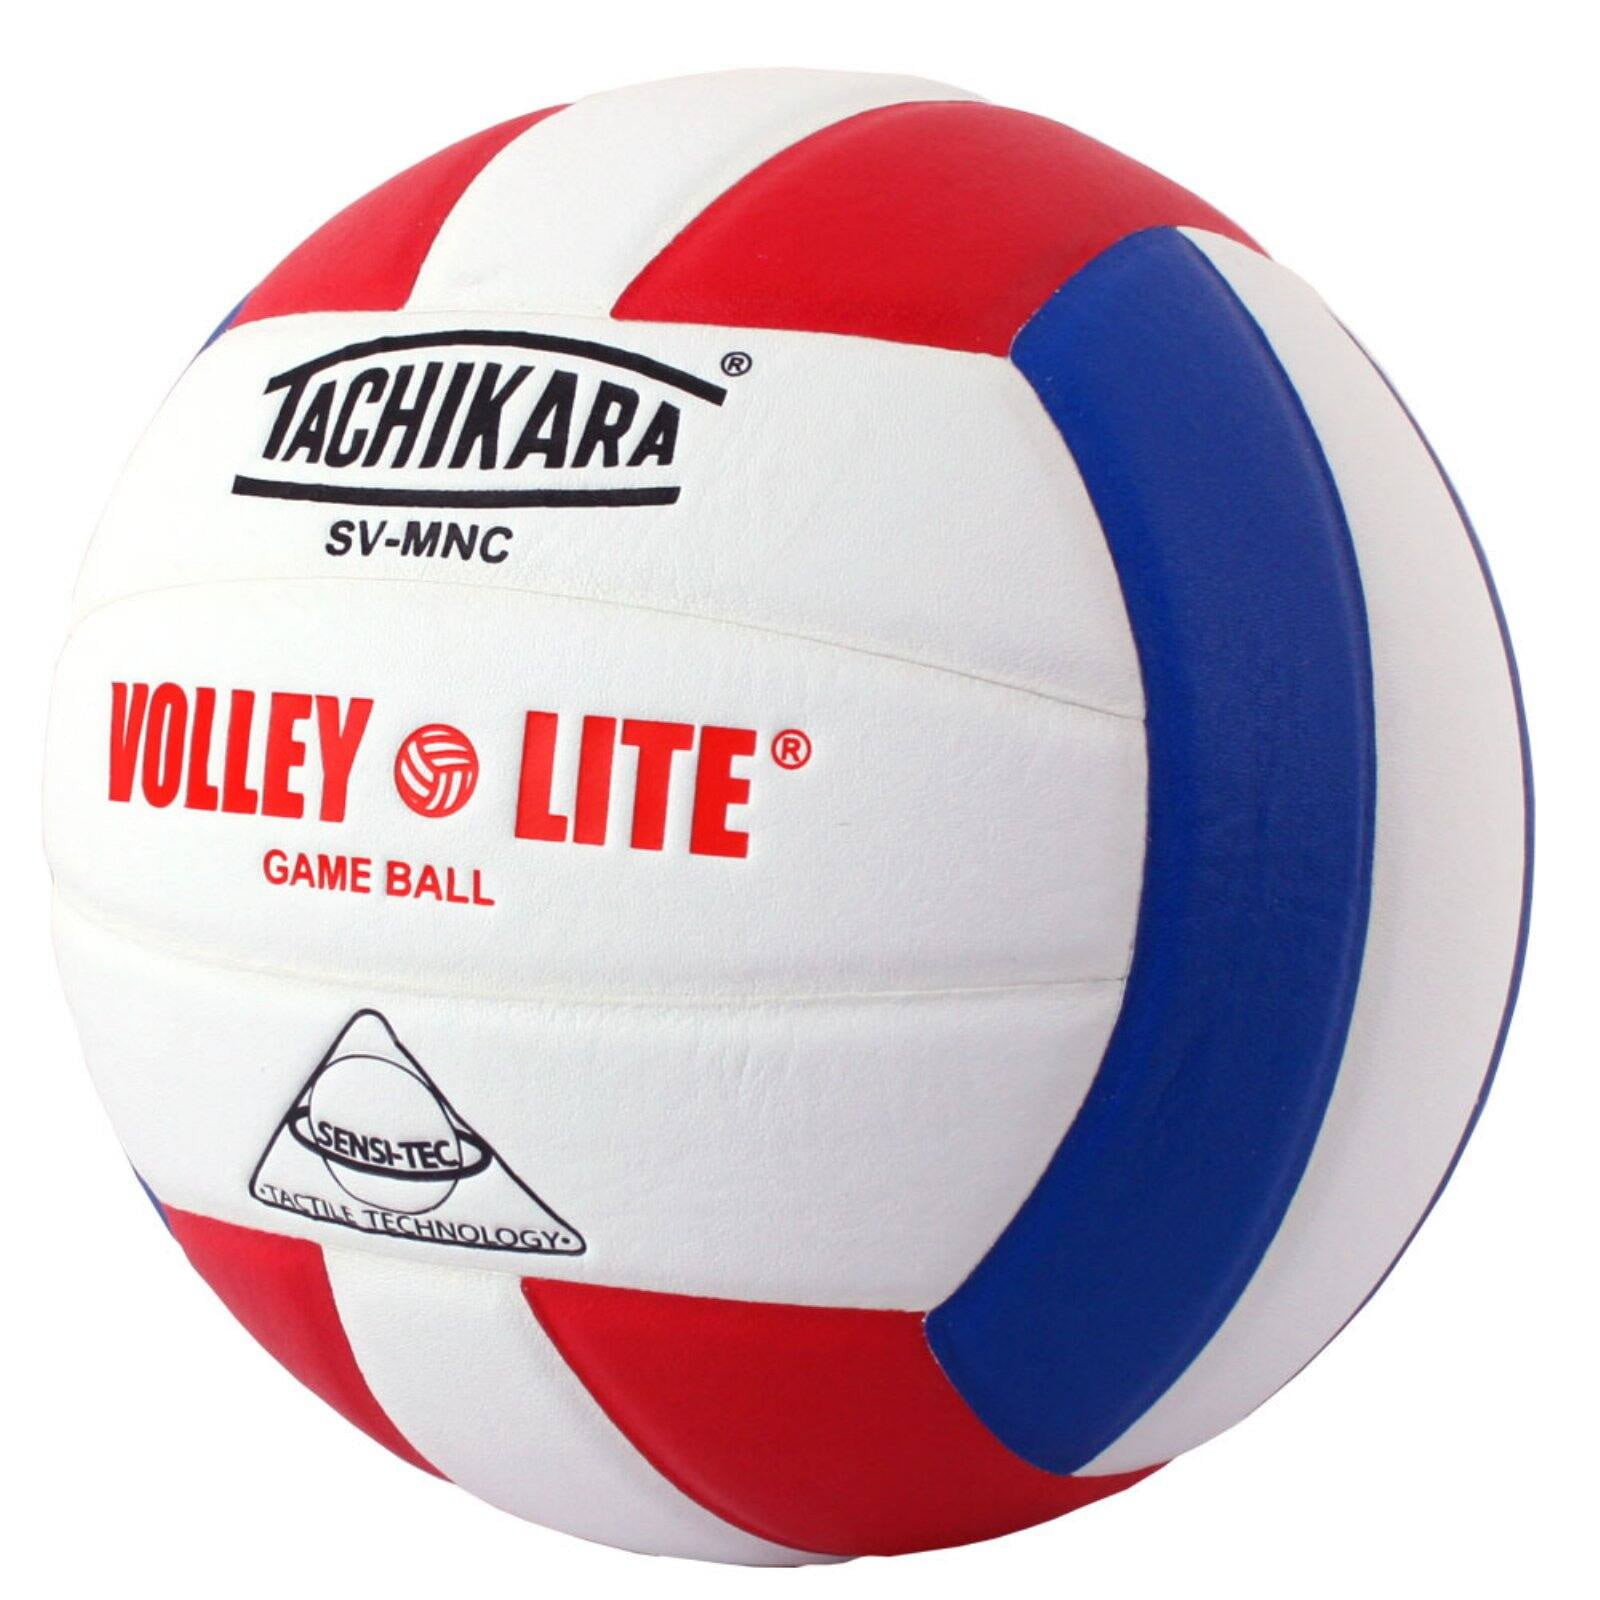 Tachikara SV-MNC Volley-Lite Volleyball Powder Blue White for sale online 